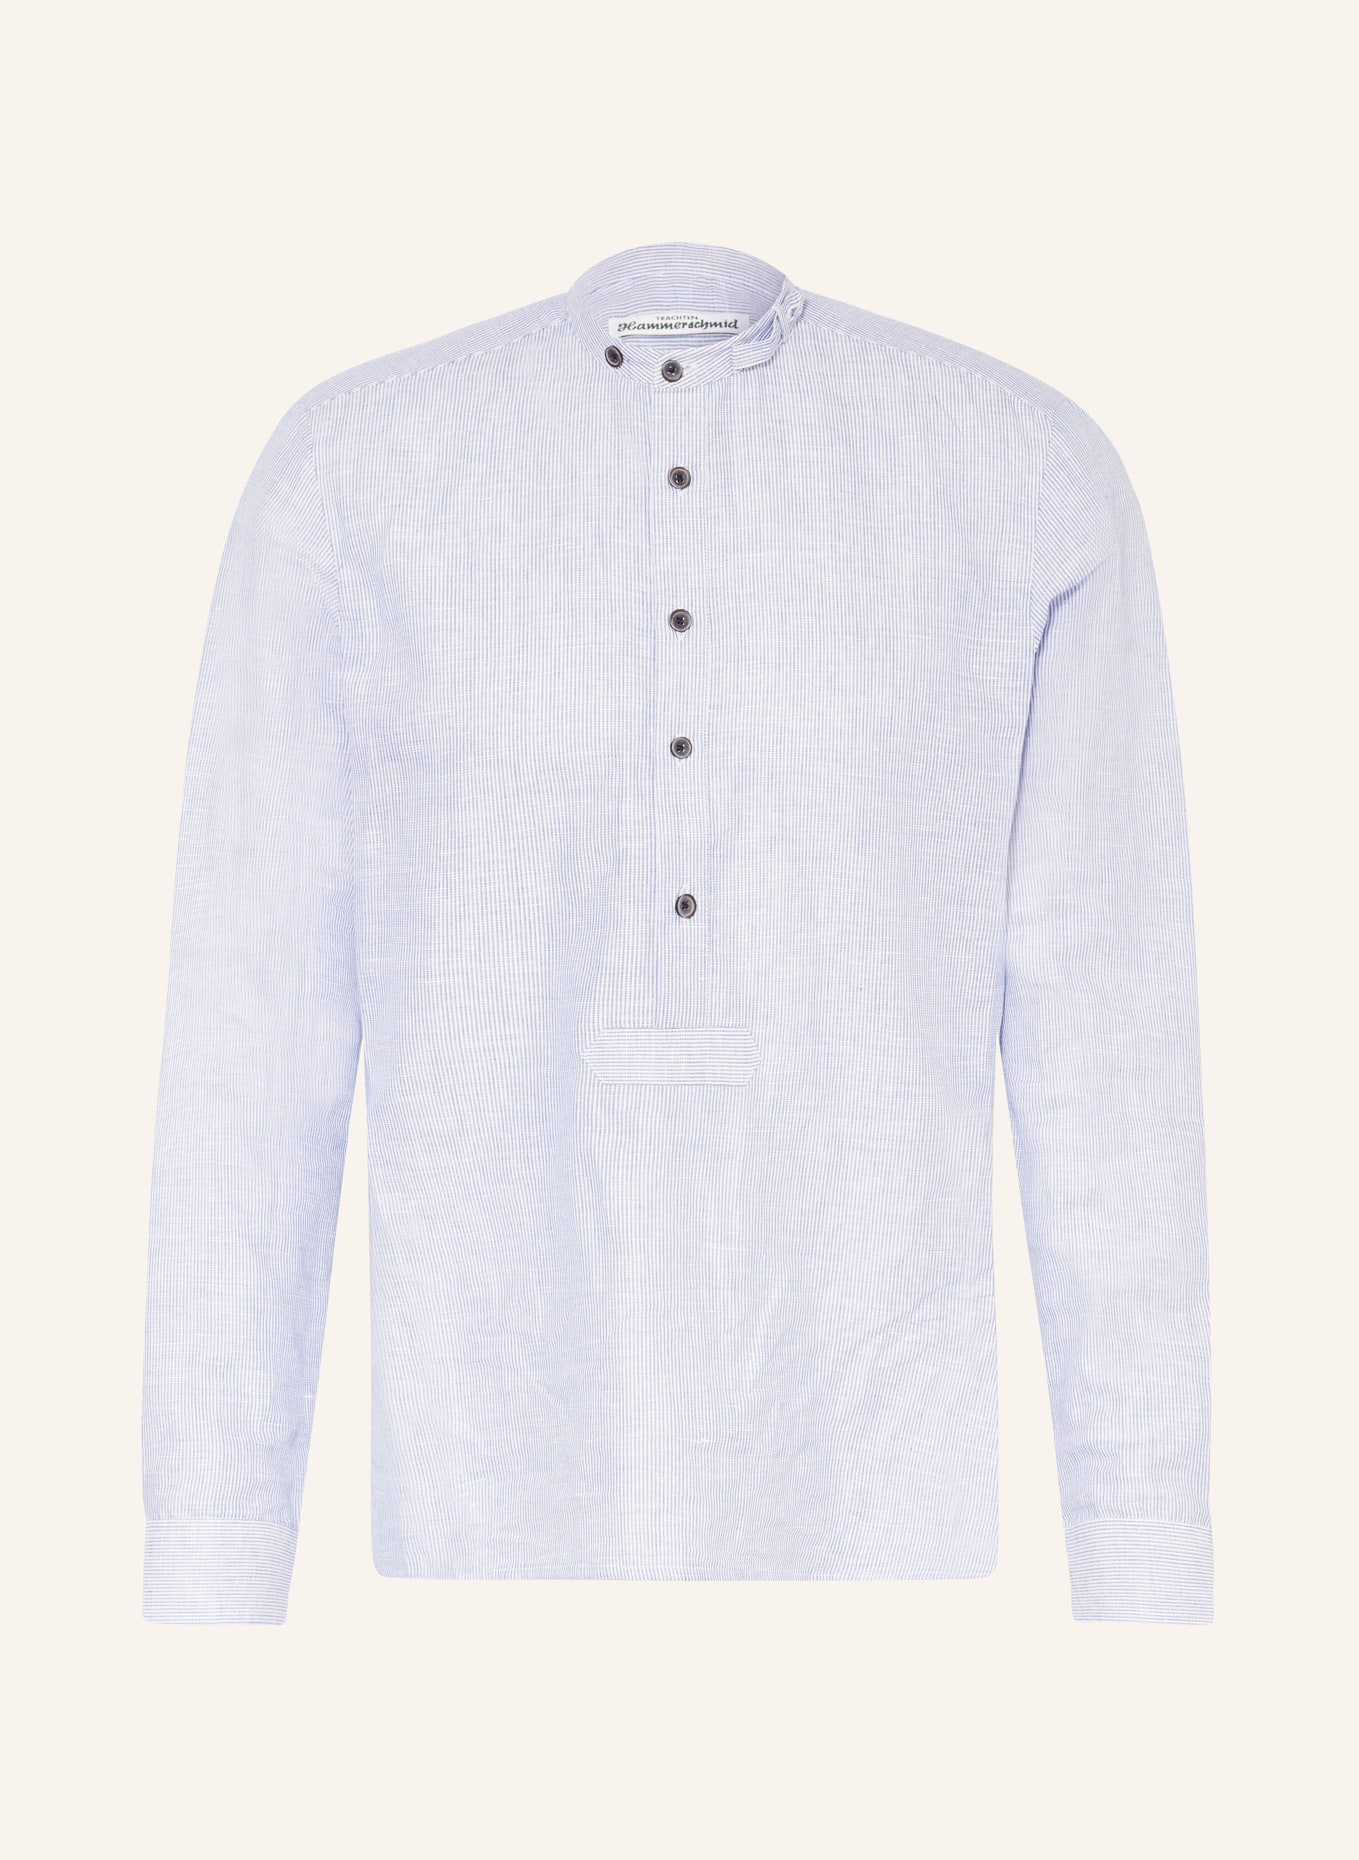 Hammerschmid Trachten shirt PFOAD regular fit, Color: WHITE/ LIGHT BLUE (Image 1)